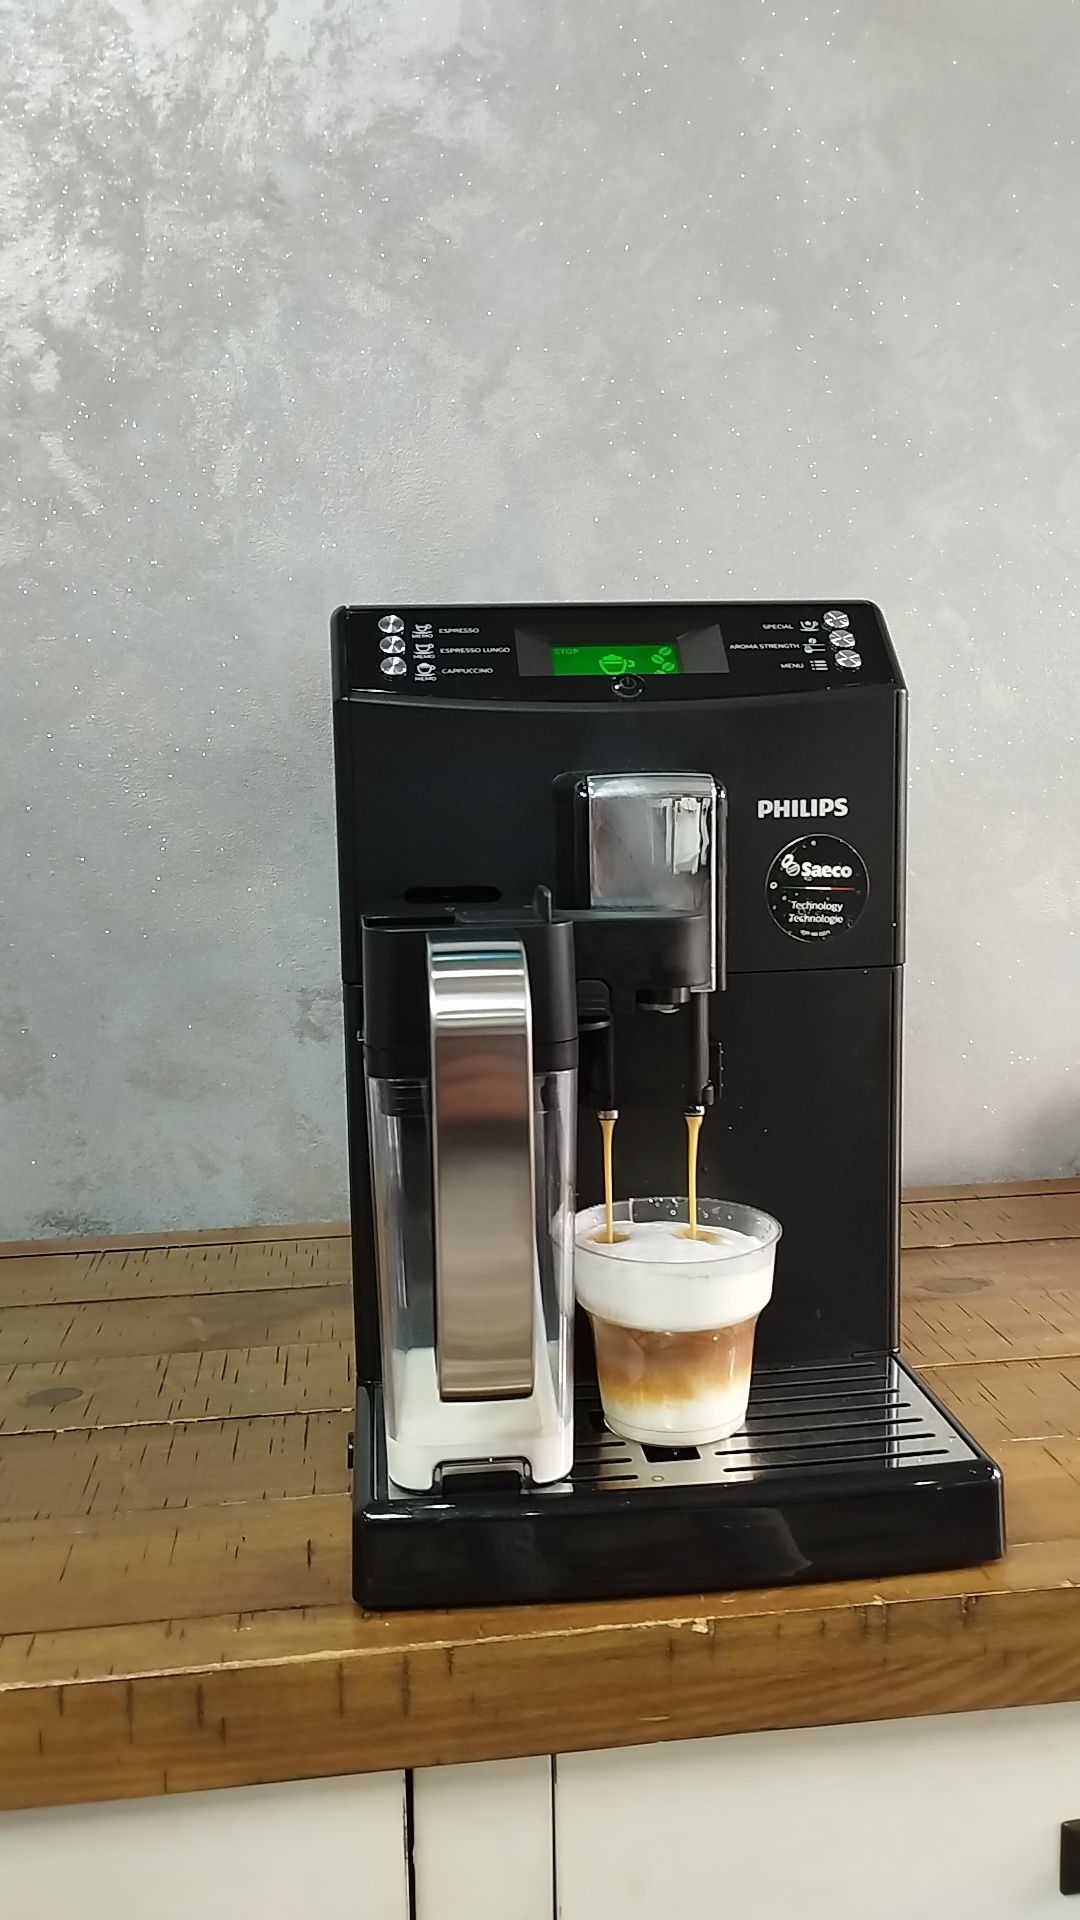 Aparat espressor cafea Saeco Minuto Cappuccino/negru/transport gratuit